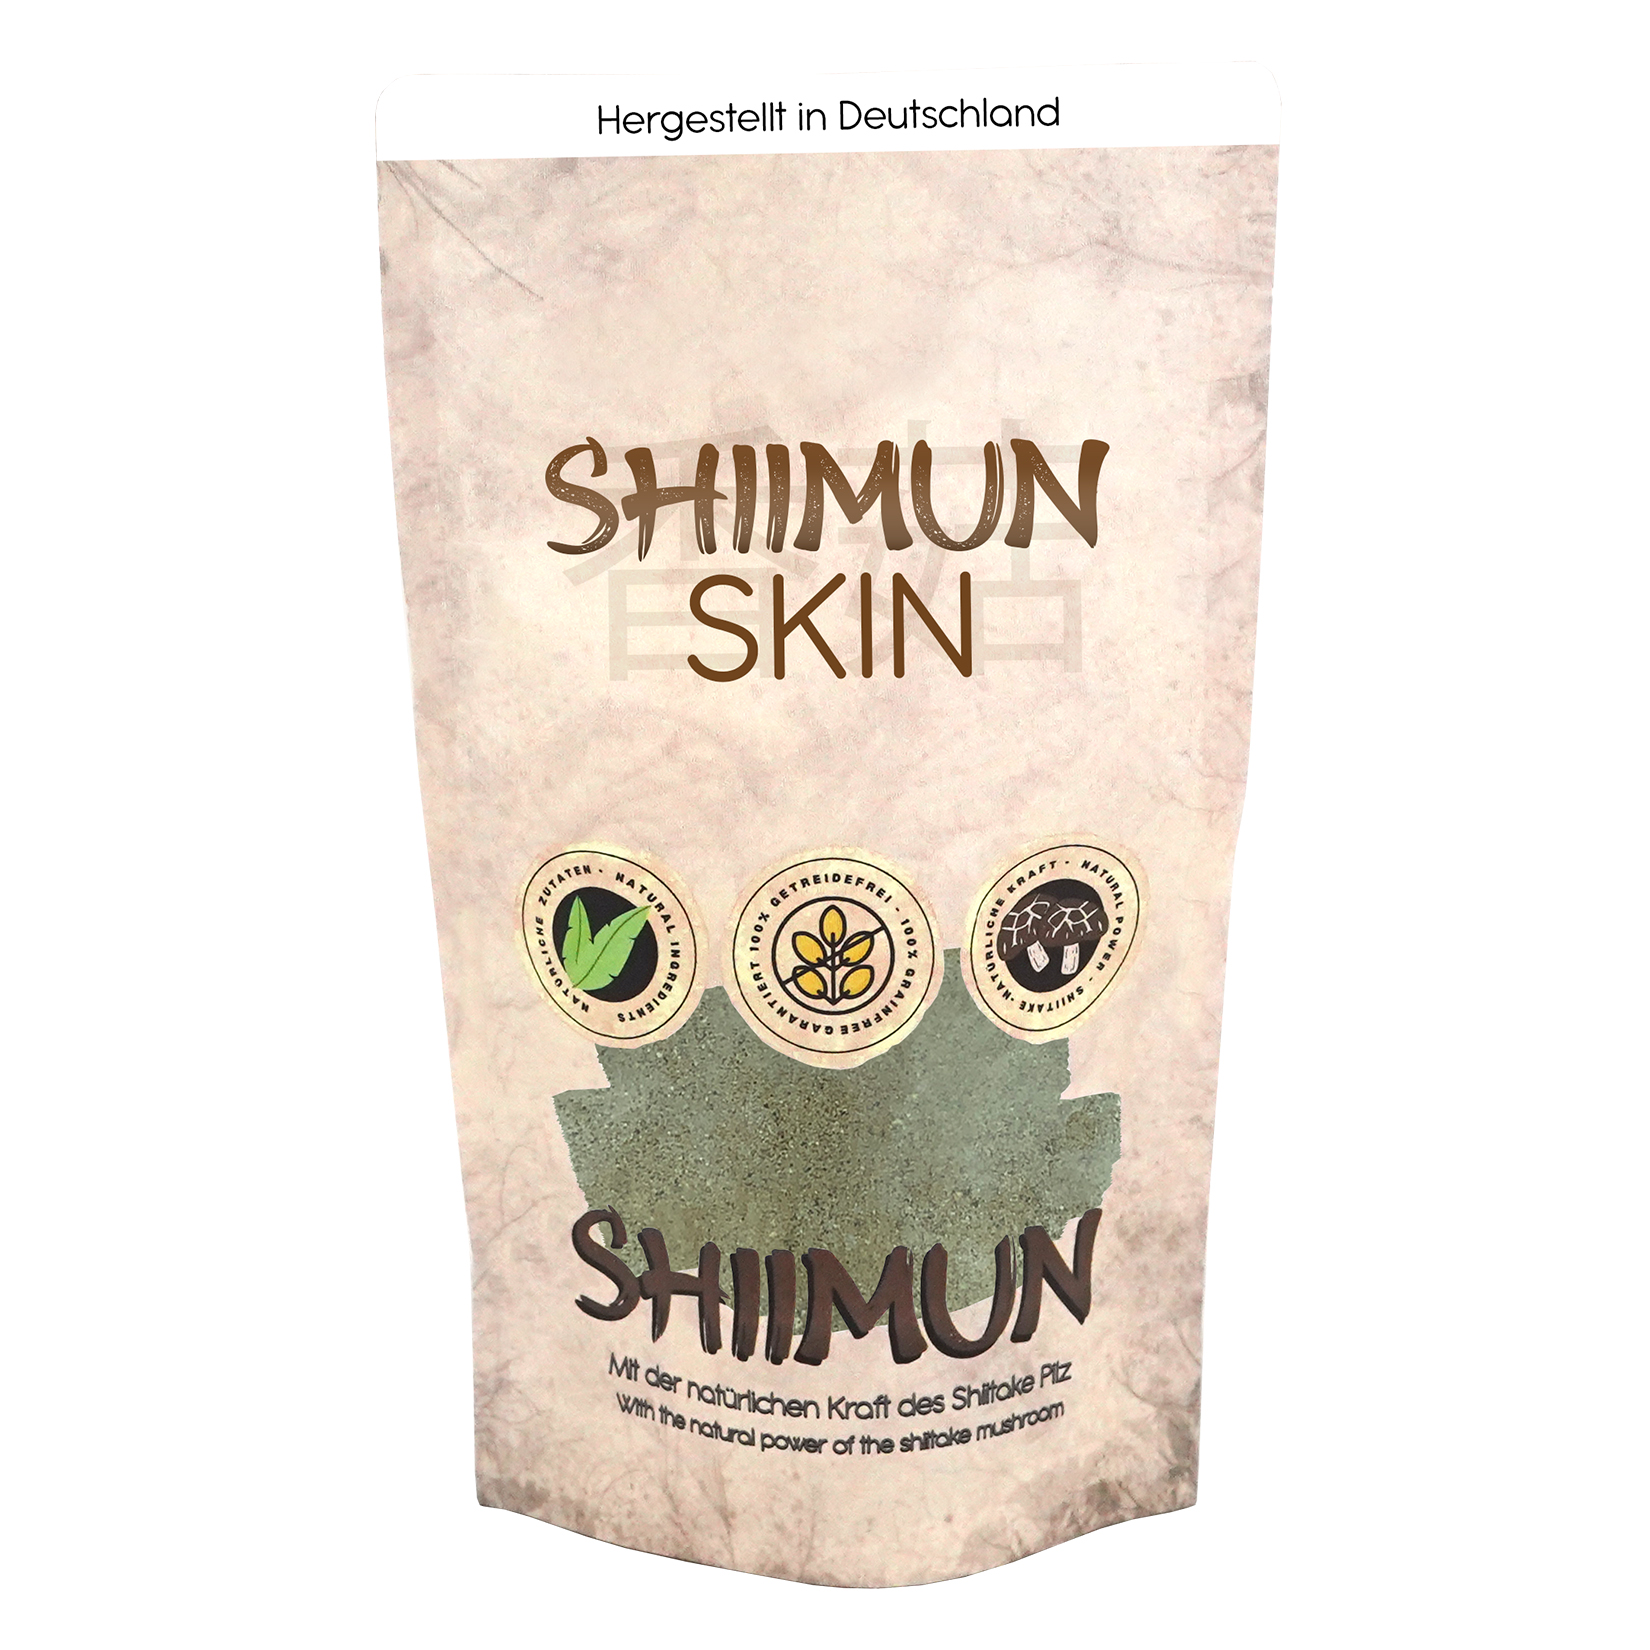 Shiimun skin poudre - shiimun skin pulver - 120g